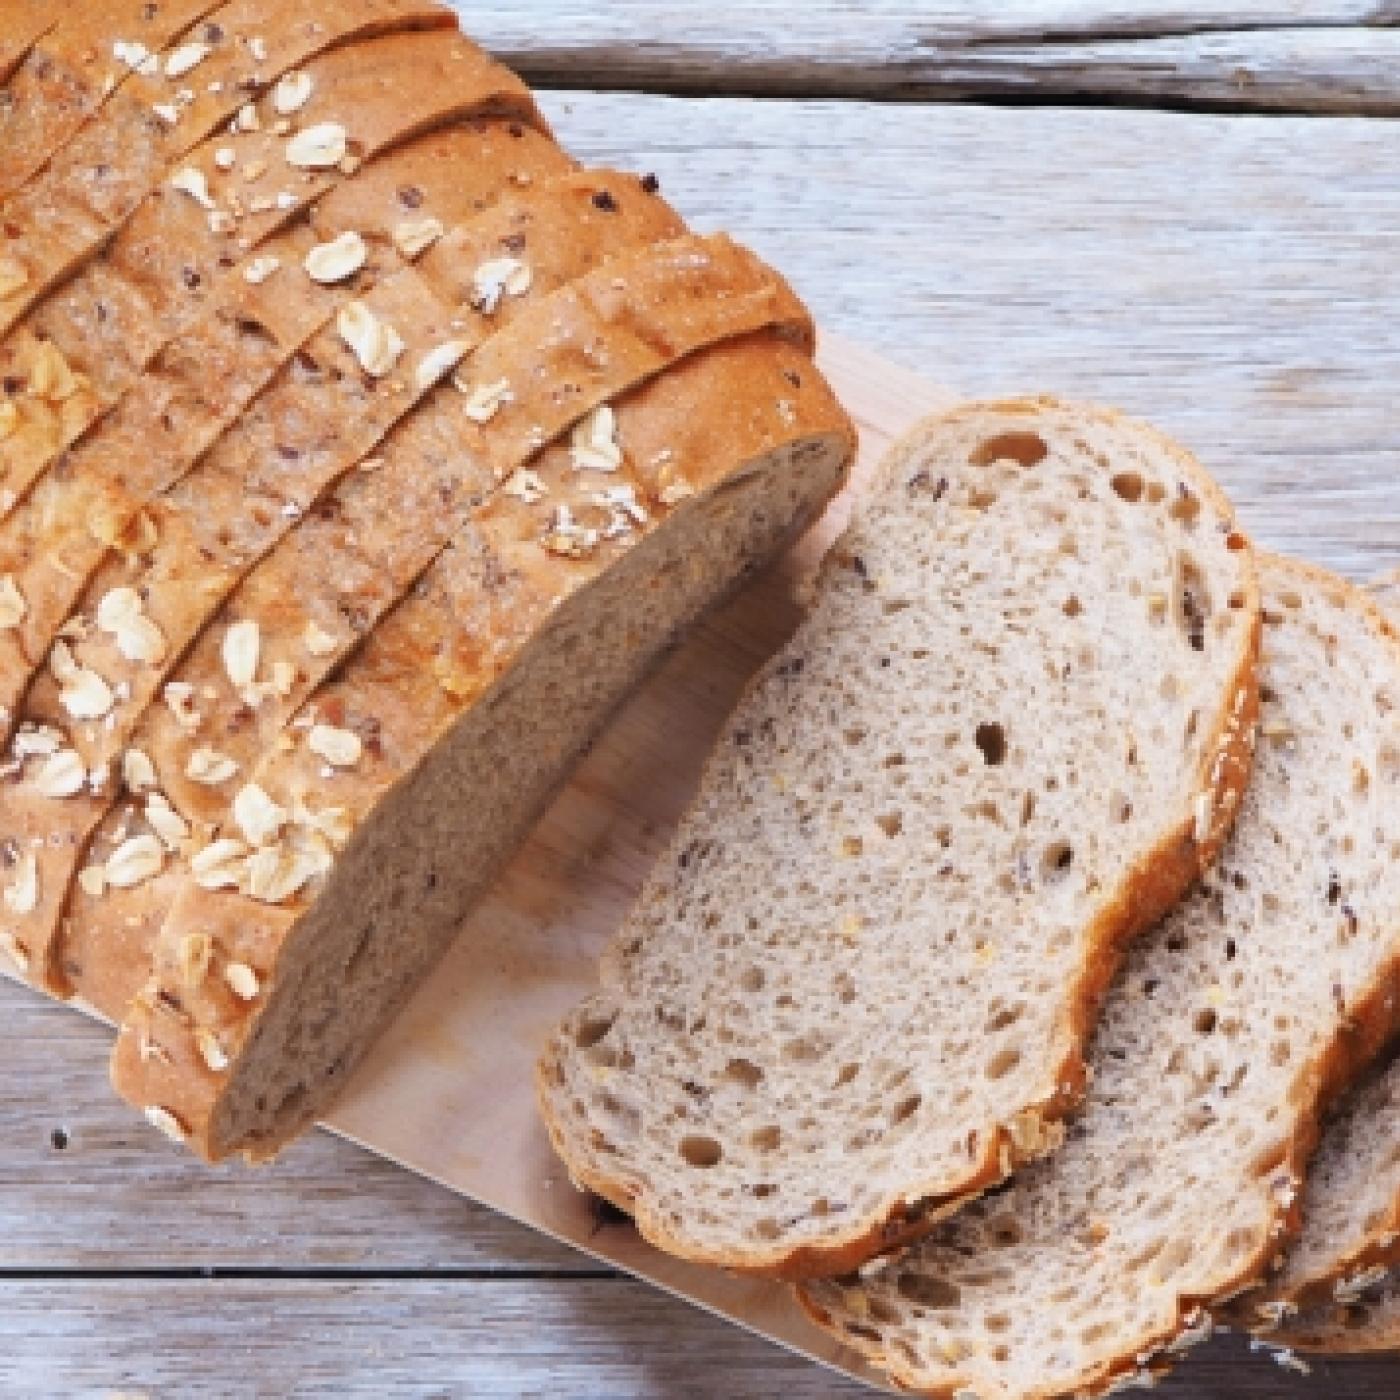 Le Journal des Bonnes Nouvelles : Comment transformer un pain rassis en pain frais ?